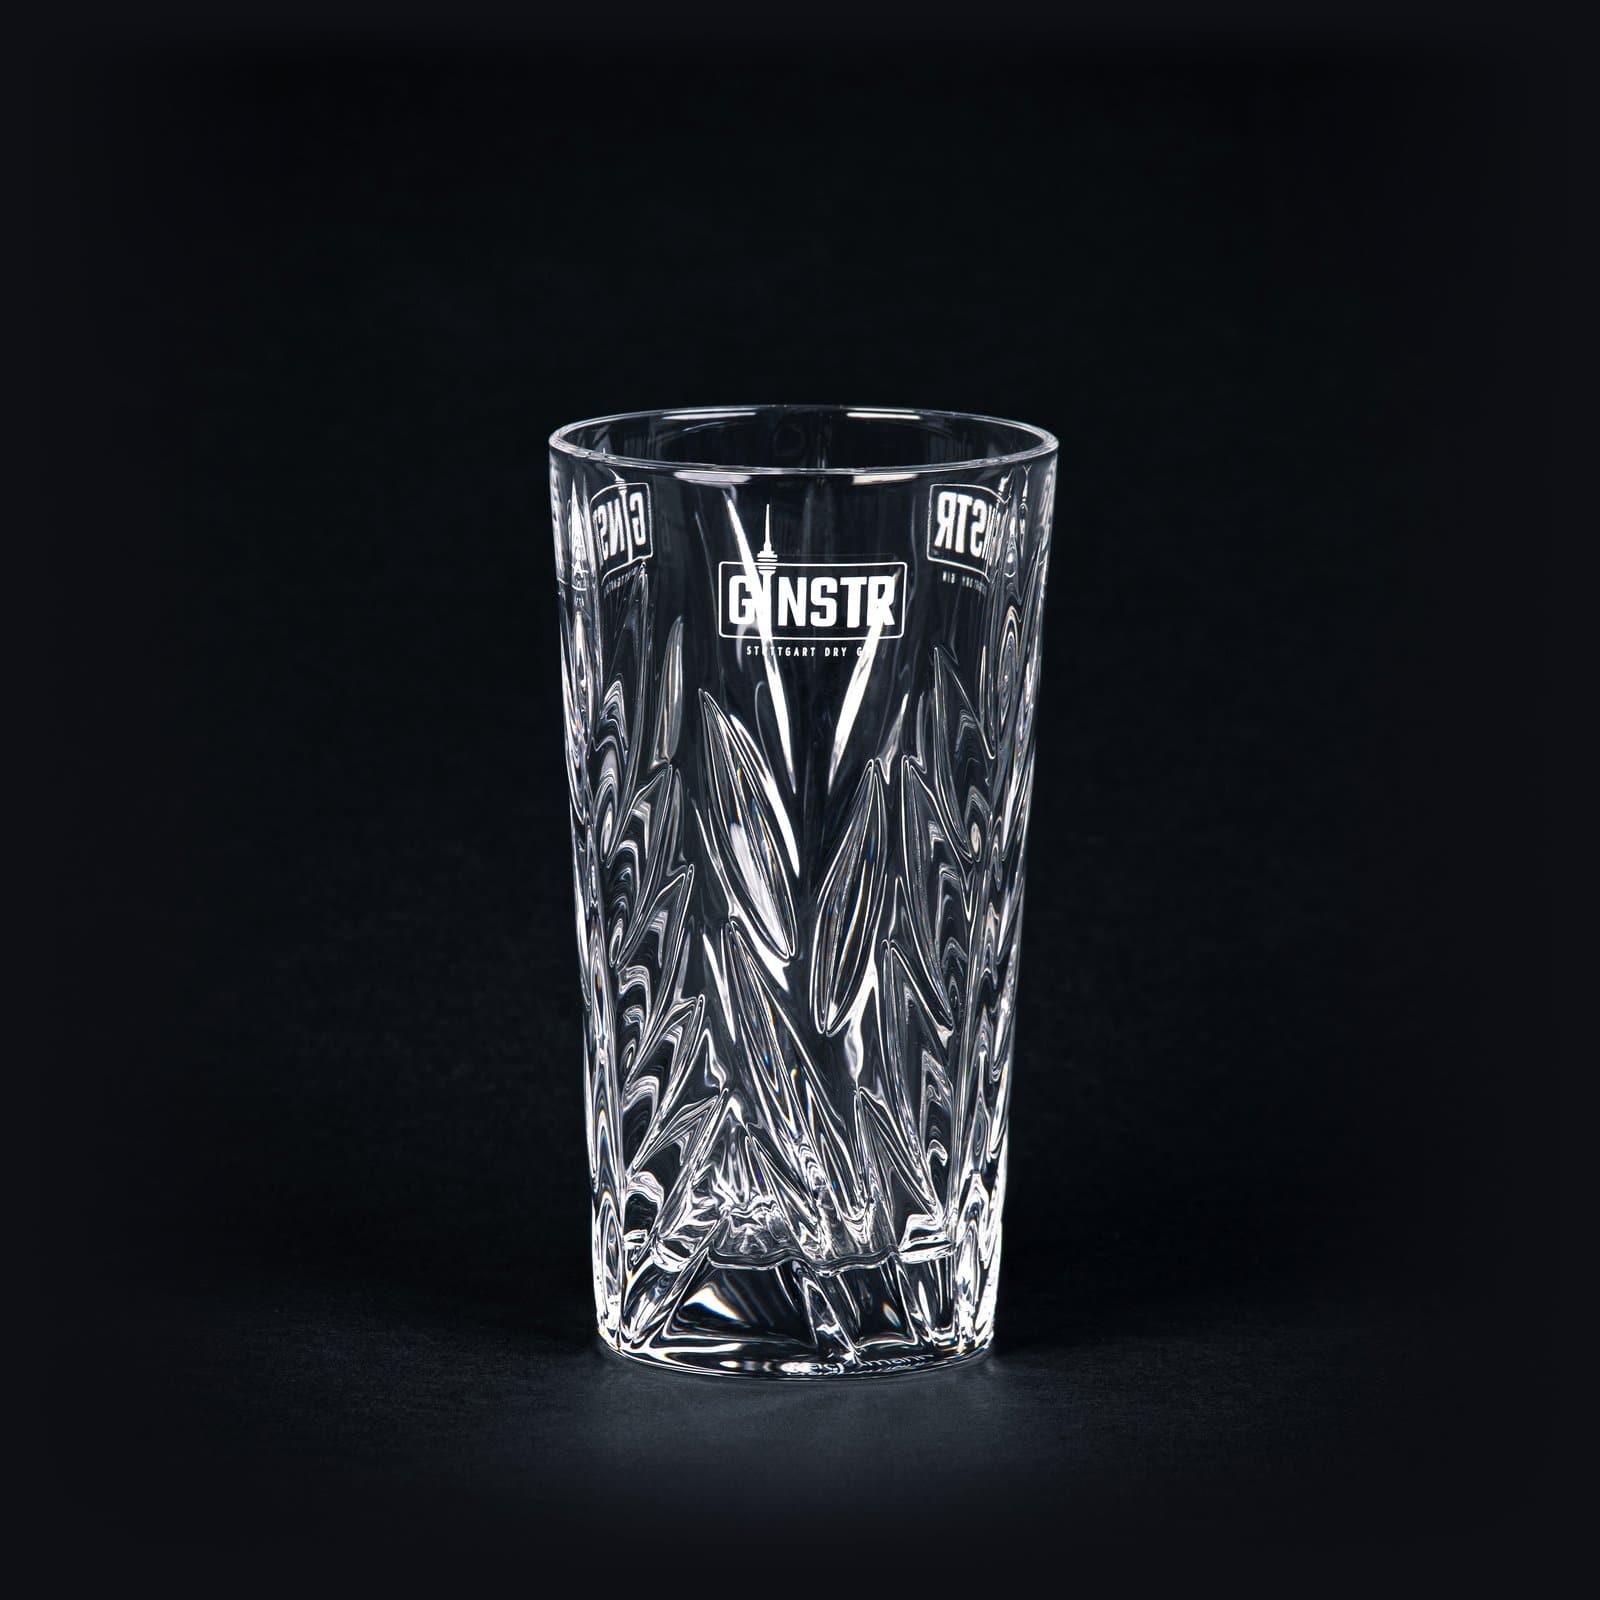 Brug GINSTR Originalt krystalglas til en forbedret oplevelse